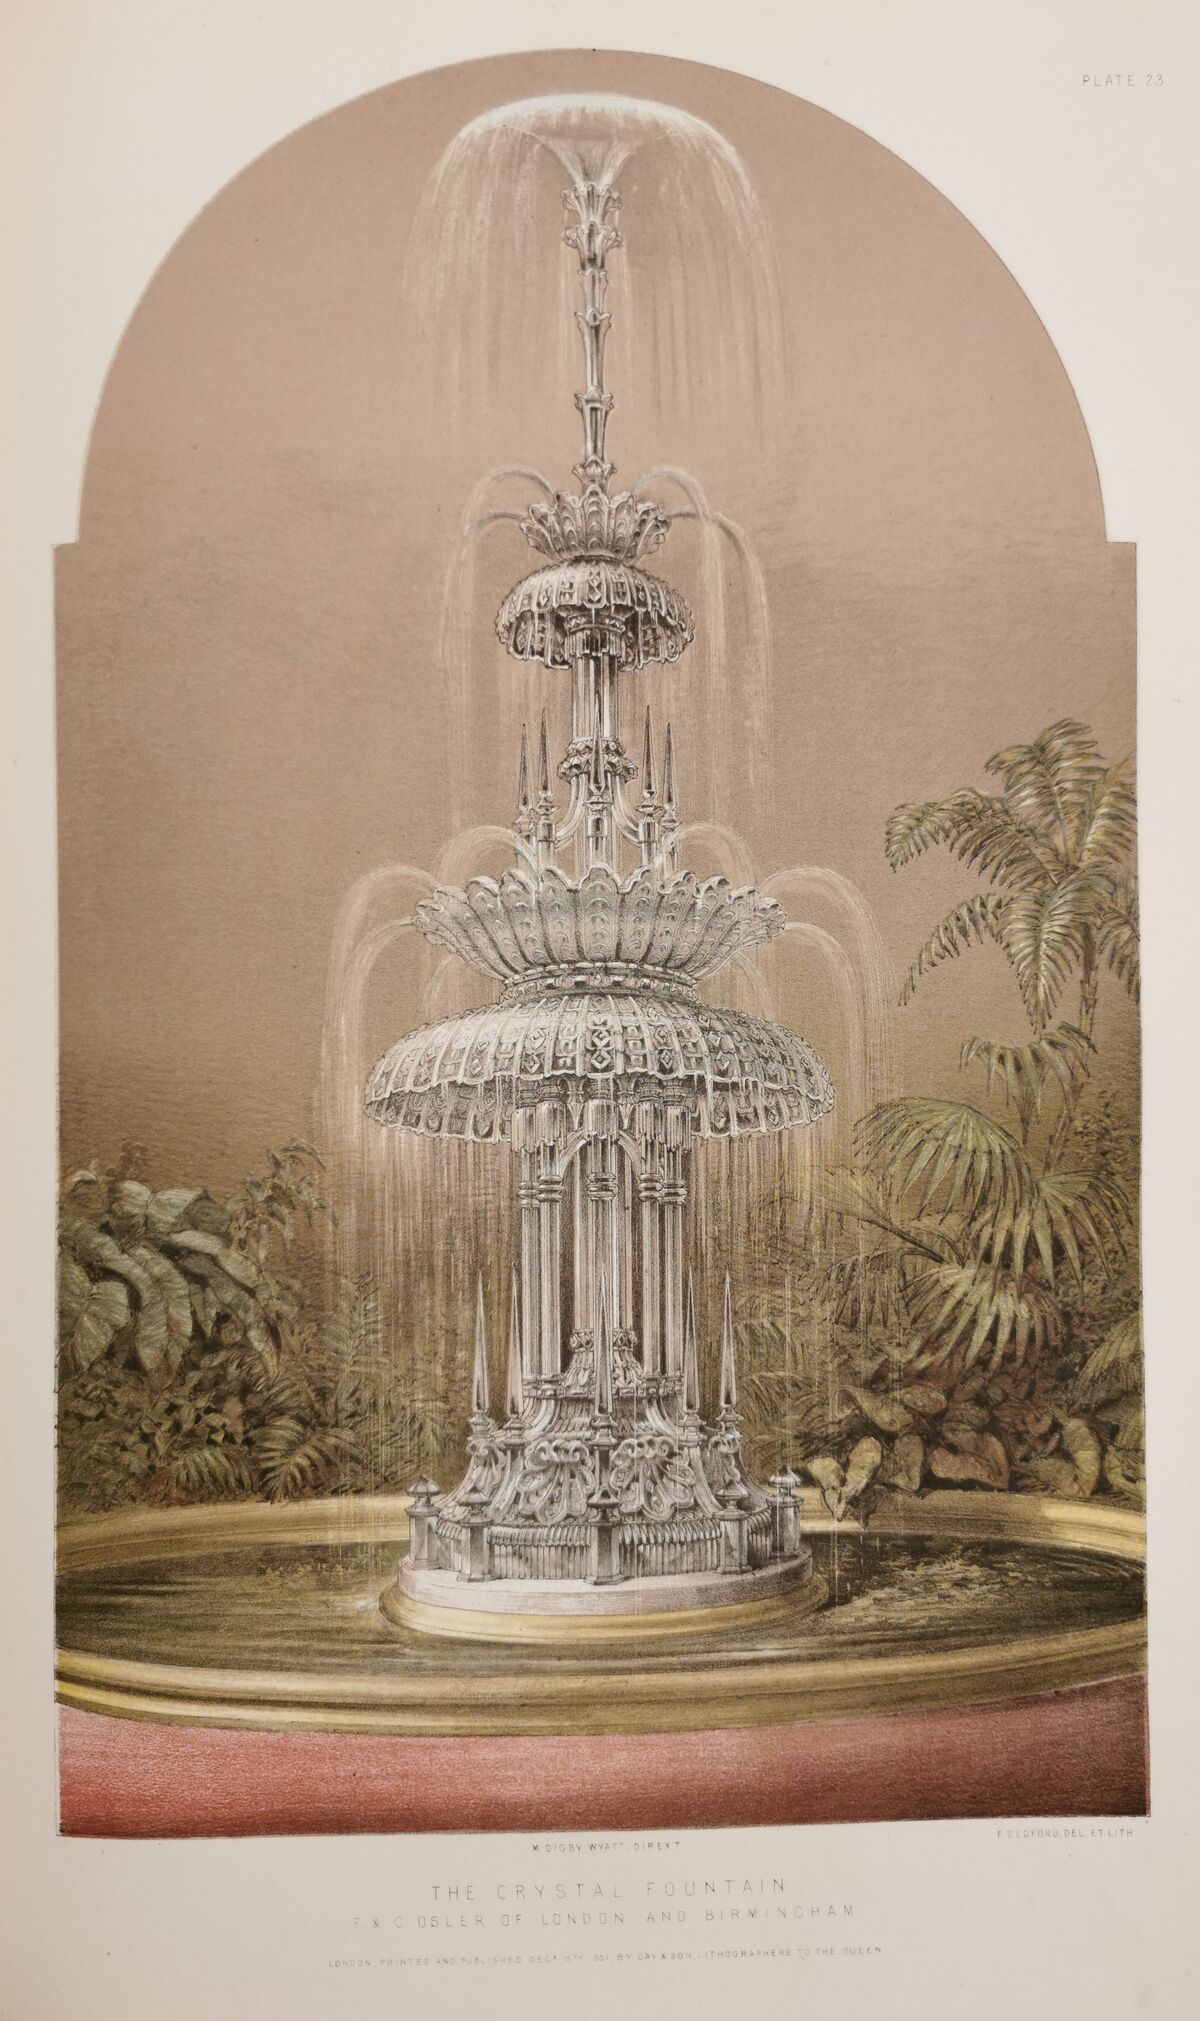 GFD 3/22: Kristallspringbrunnen von F. & C. Osler (Lithografie von Francis Bedford, 1853)